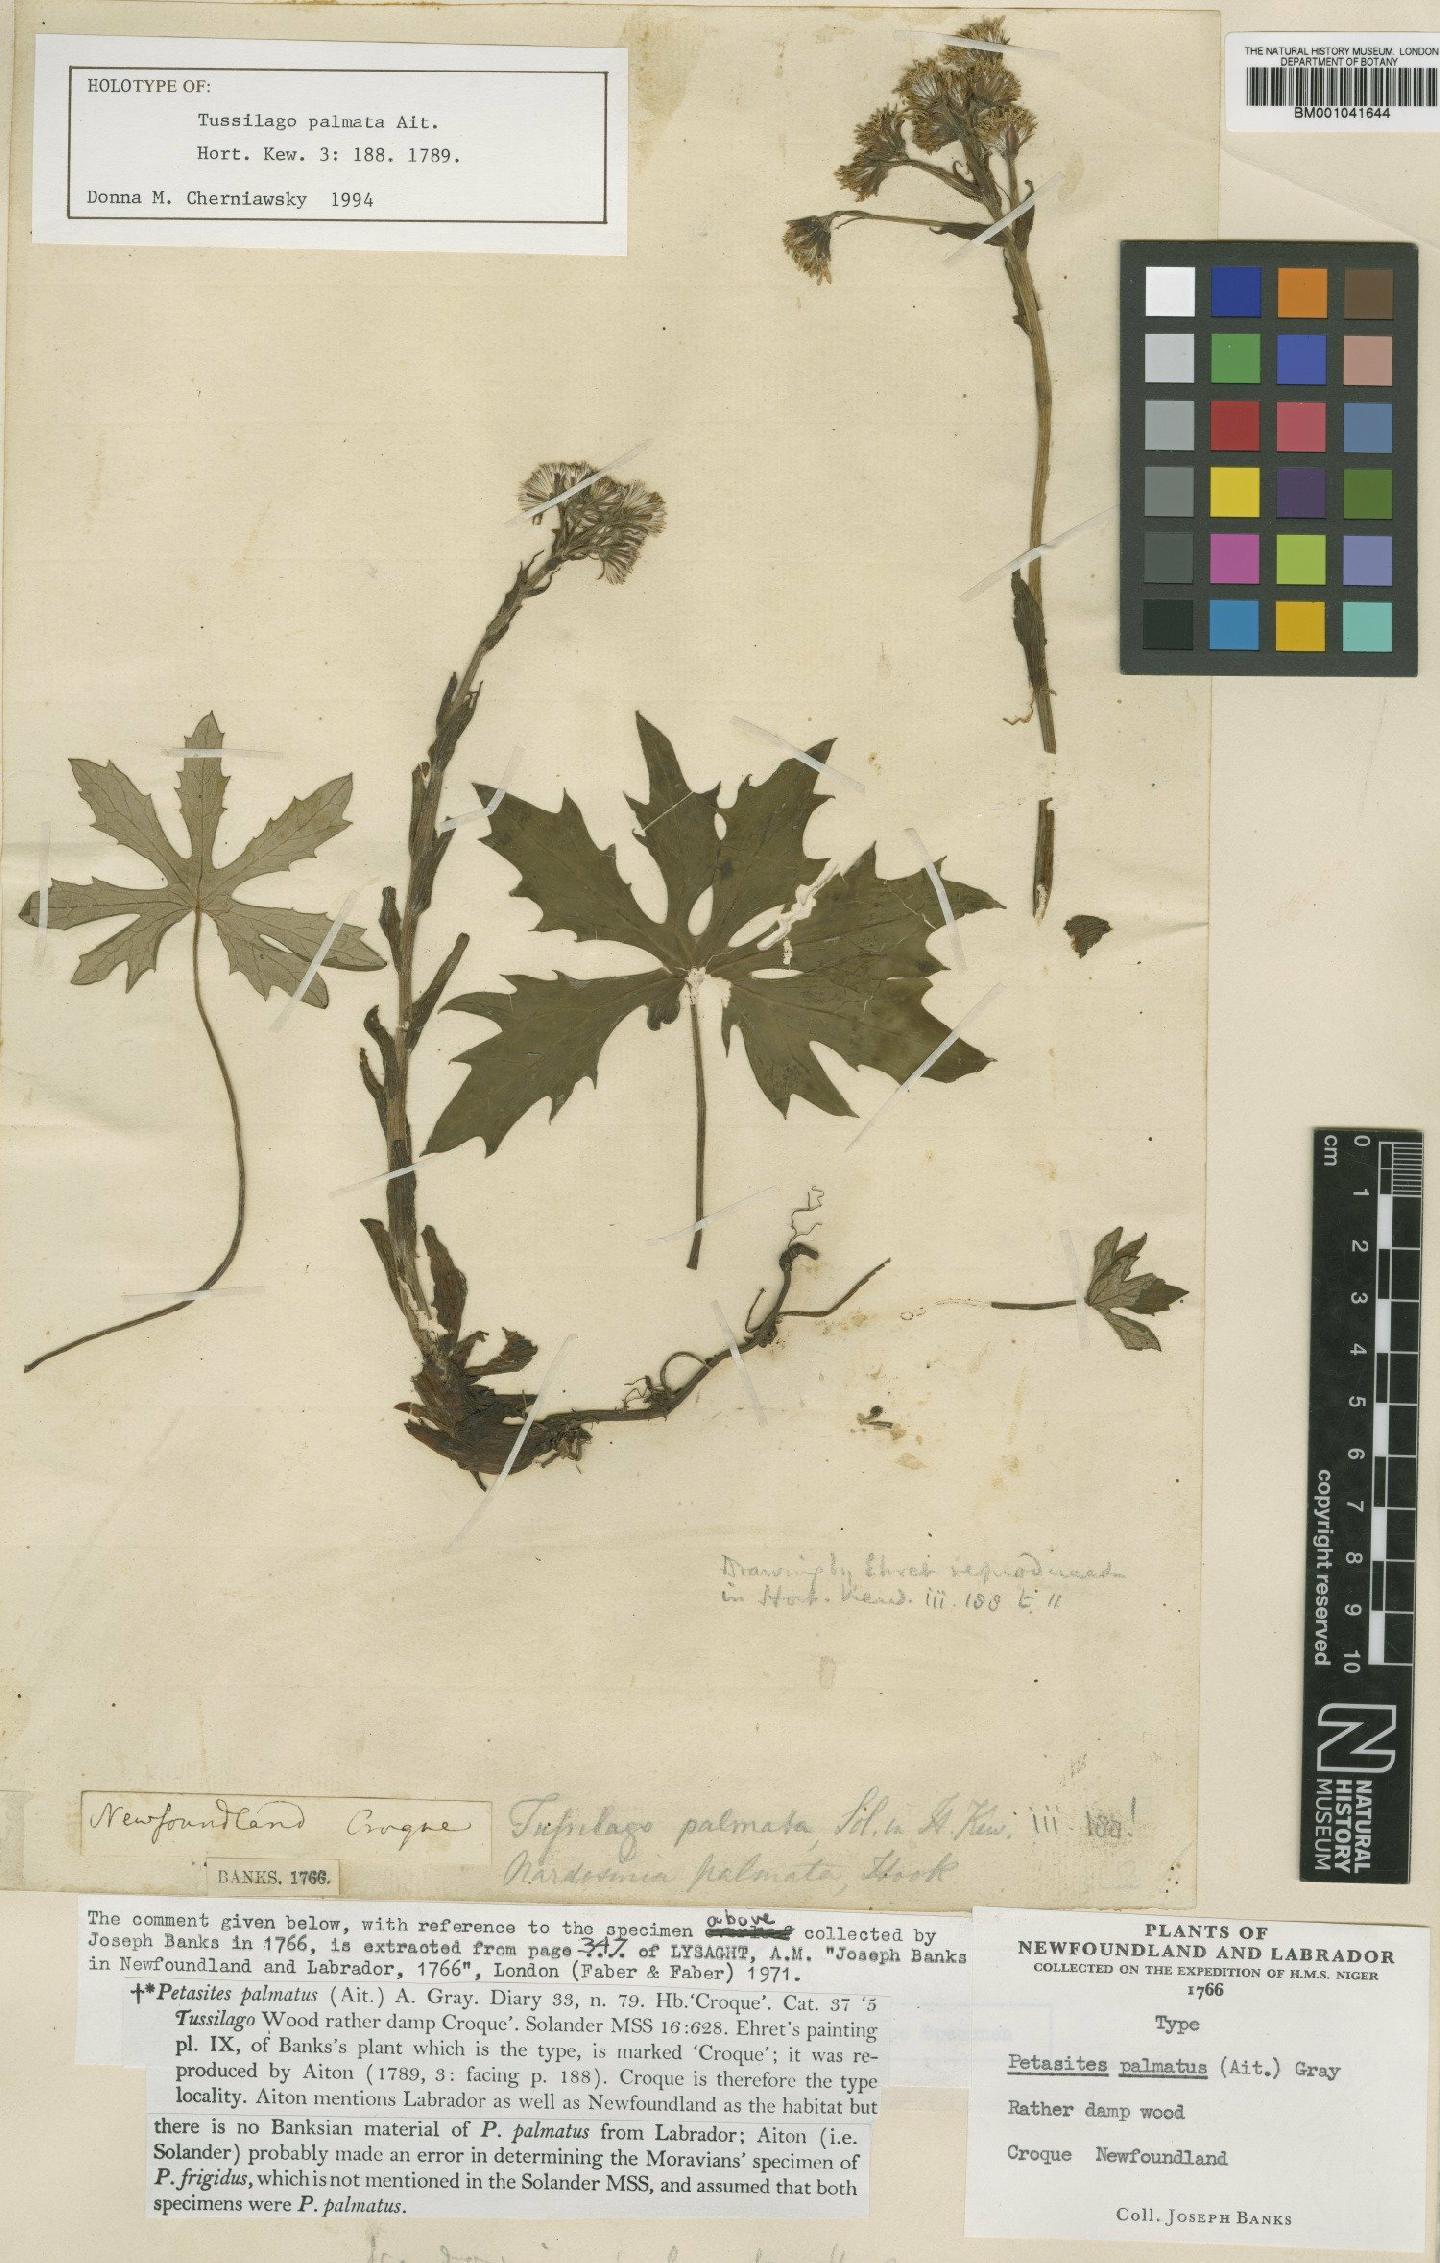 To NHMUK collection (Petasites palmatus (Aiton) Gray; Type; NHMUK:ecatalogue:1186419)